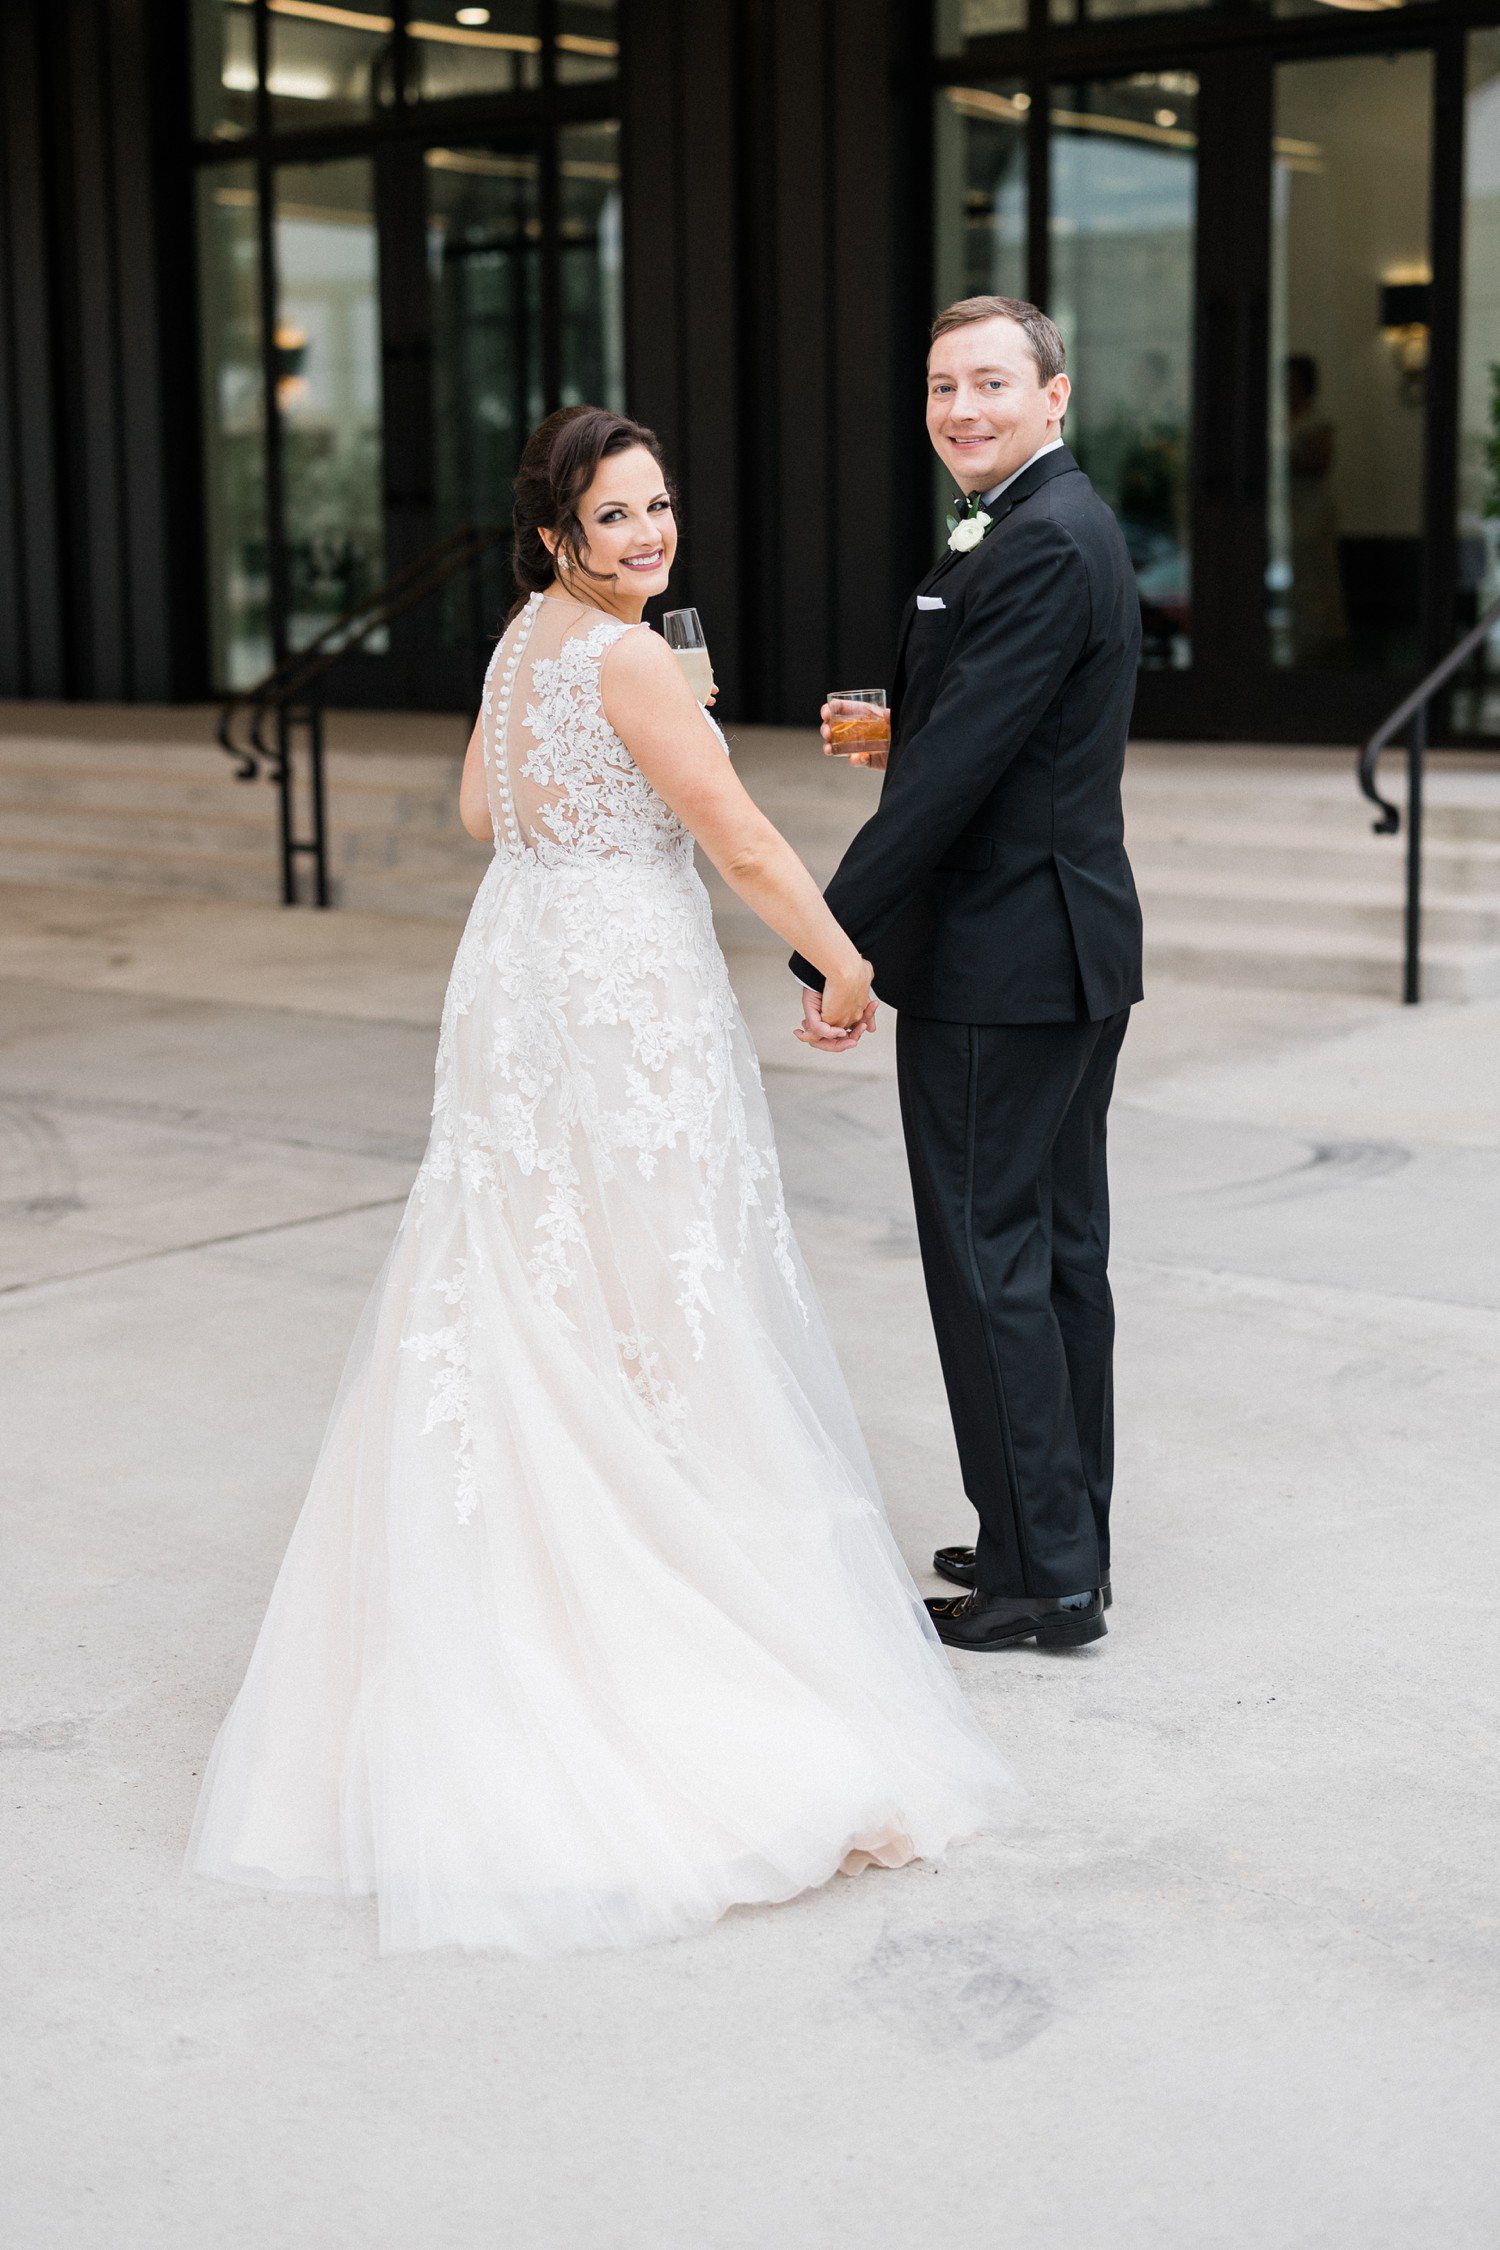 The Revaire Wedding in Houston